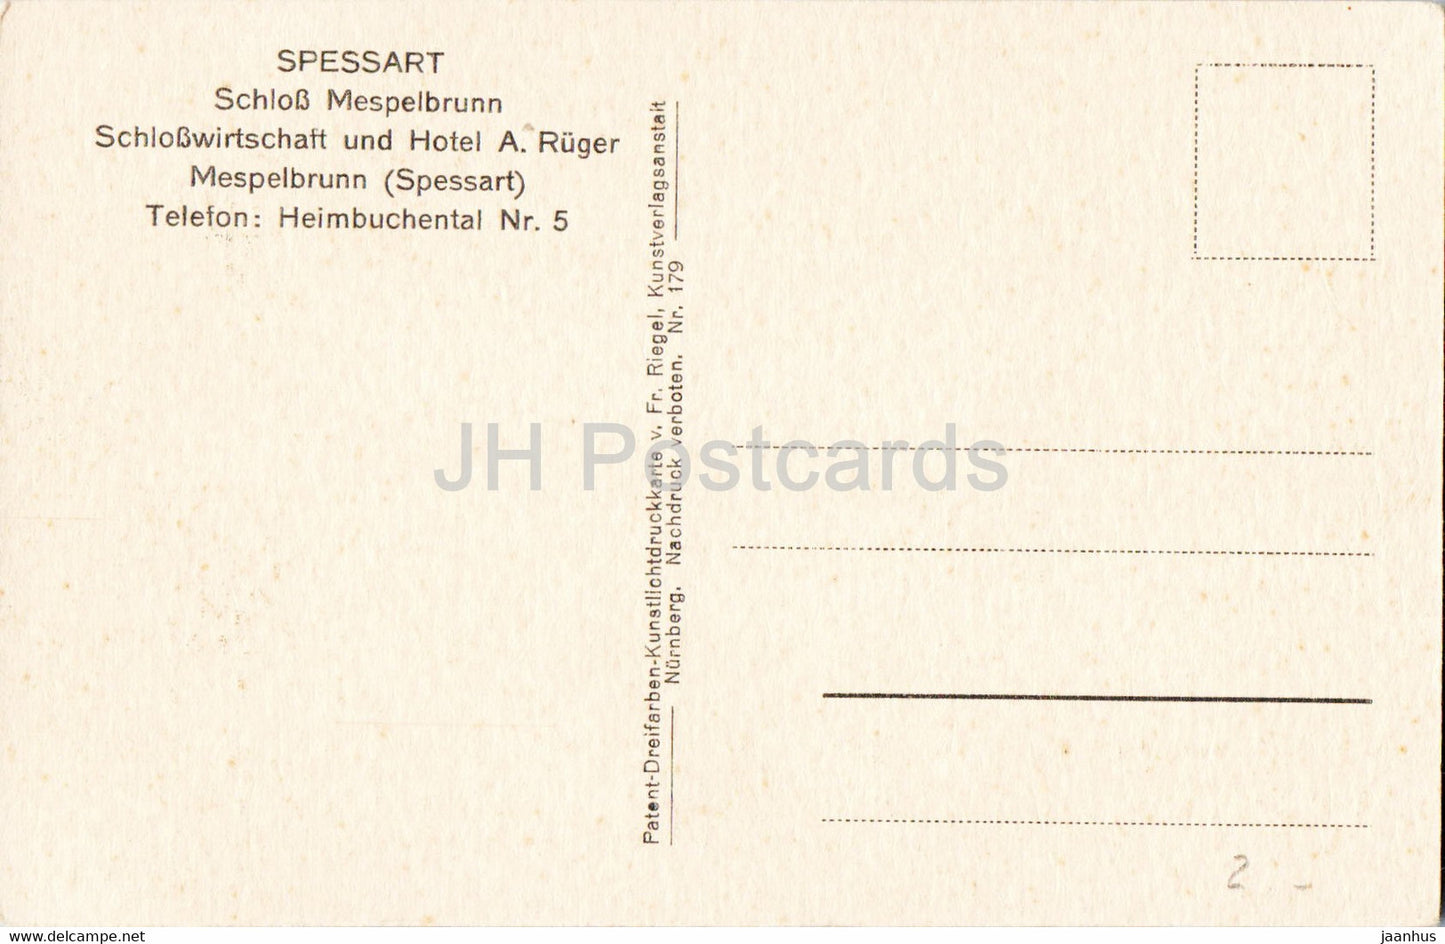 Spessart - Schloss Mespelbrunn - Vögel - Schwan - Schloss - 179 - alte Postkarte - Deutschland - unbenutzt